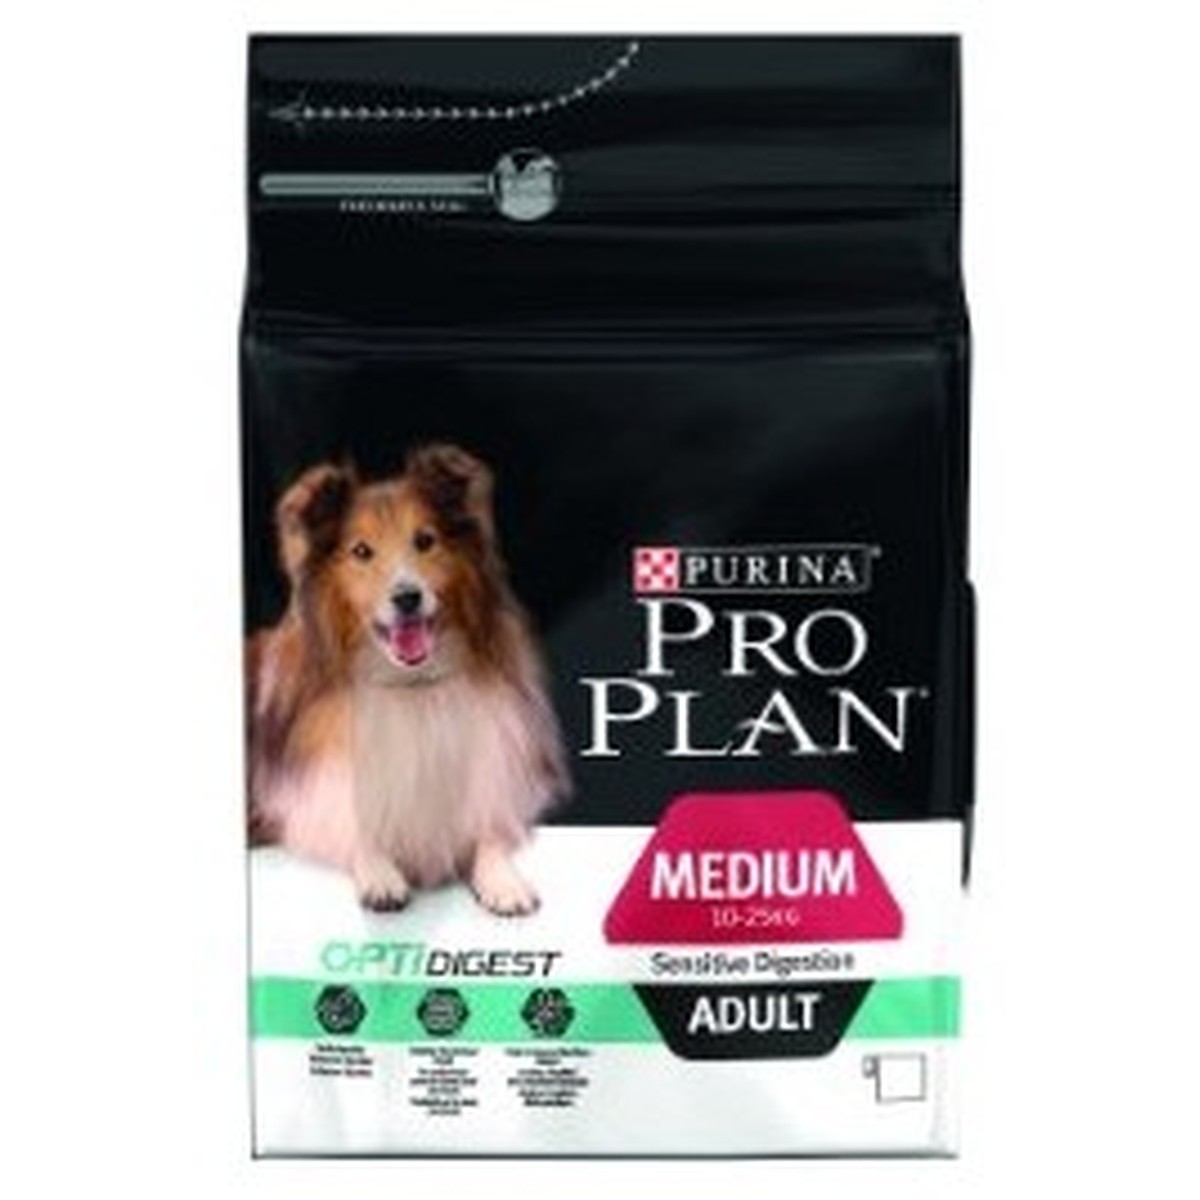   Proplan dog MEDIUM ADULT SENSITIVE DIGESTION 3kg  3kg